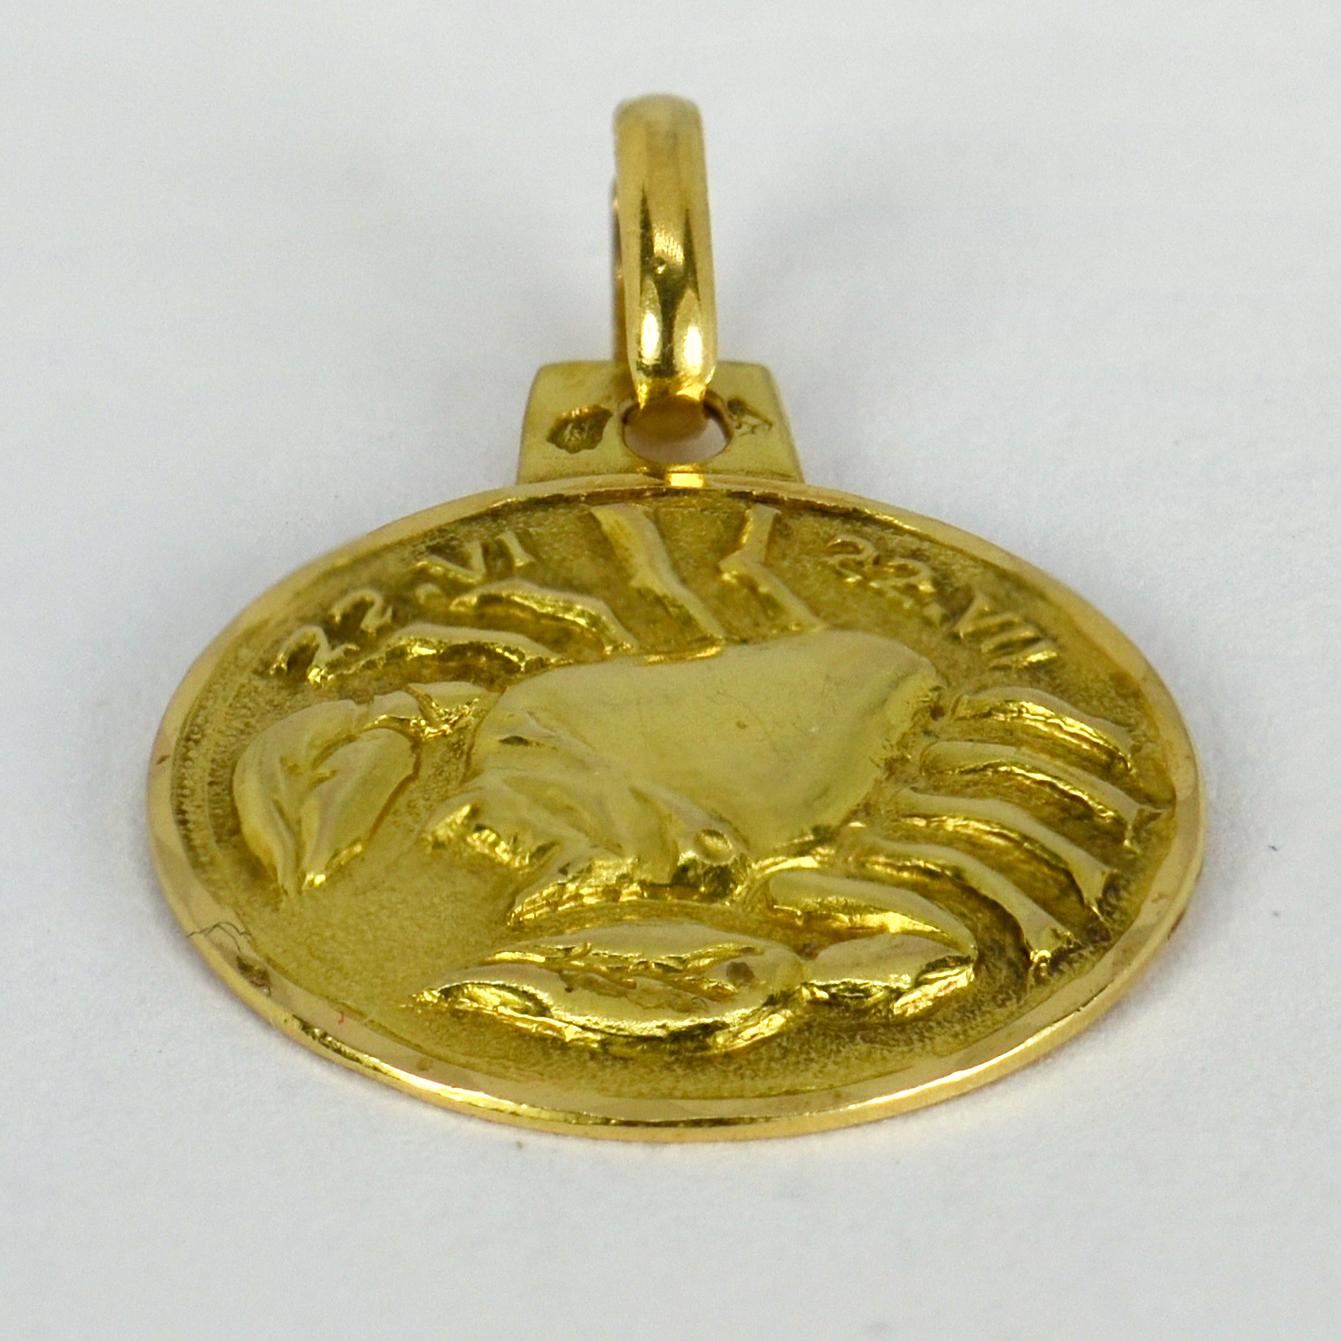 Pendentif à breloques en or jaune 18 carats (18K) conçu comme le signe astrologique zodiacal du Cancer, représentant un crabe avec les dates 22-VI - 22-VII. Estampillé de la tête d'aigle française pour l'or 18 carats.

Dimensions : 2 x 1,6 x 0,1 cm